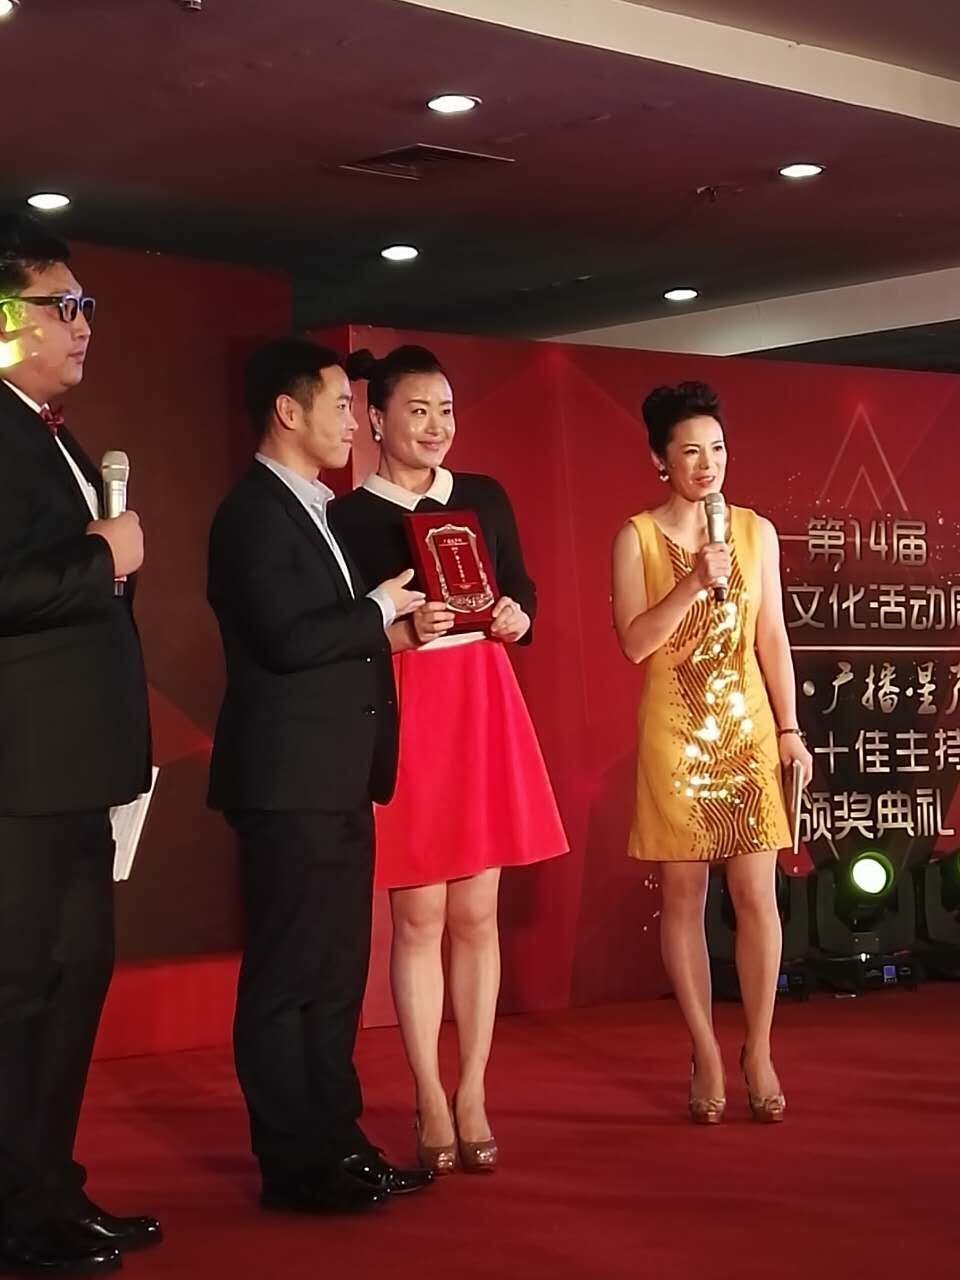 祝贺!无锡交通广播孙敏喜获2014年度中国播音主持"金话筒"提名奖